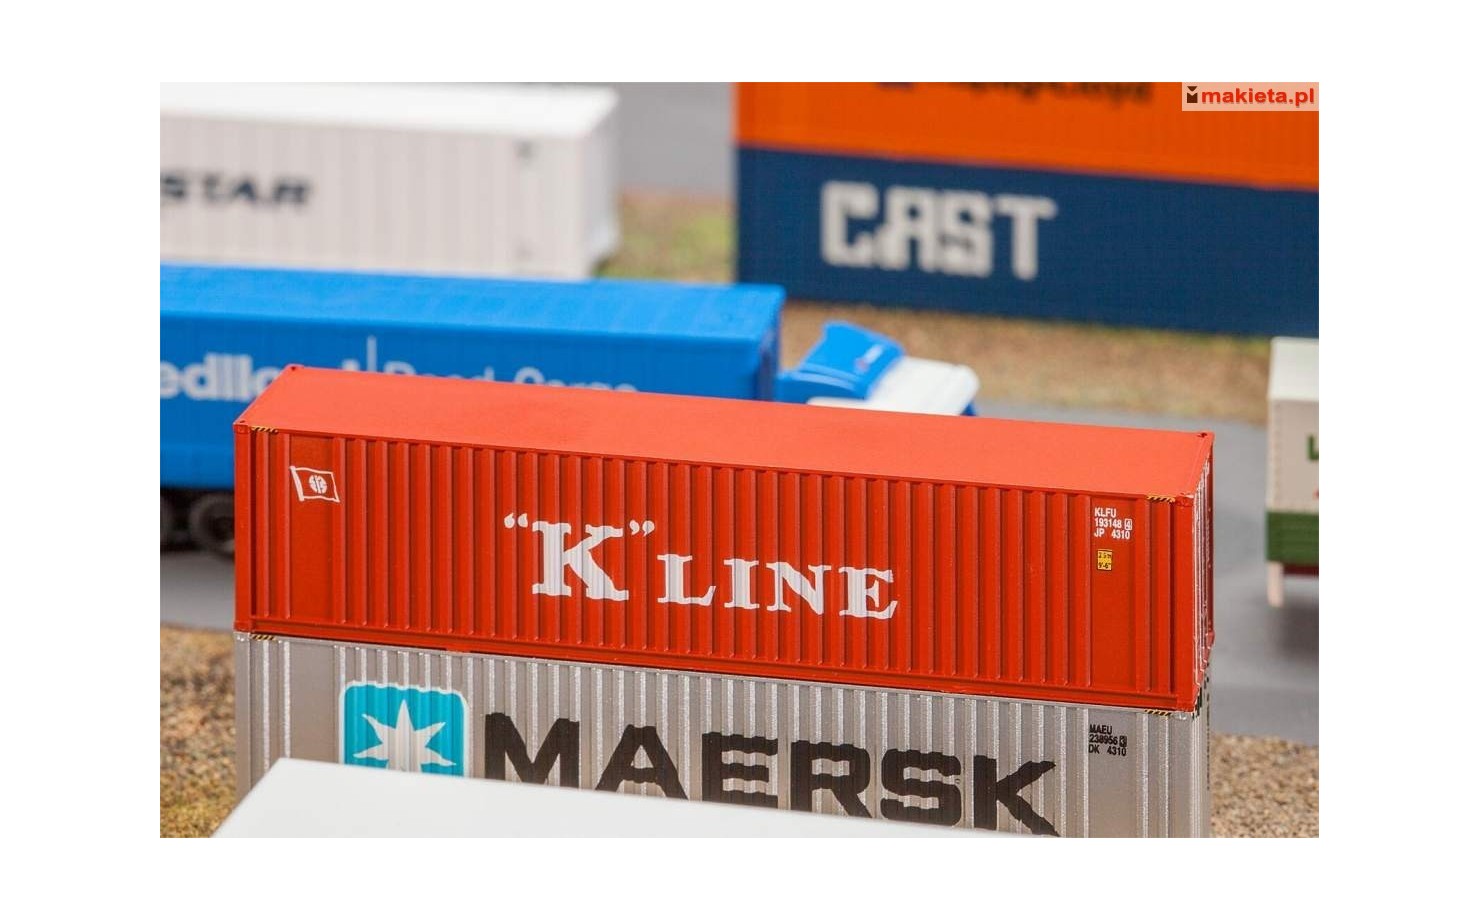 Faller 272820. 40' kontener »K-Line«, skala N 1:160